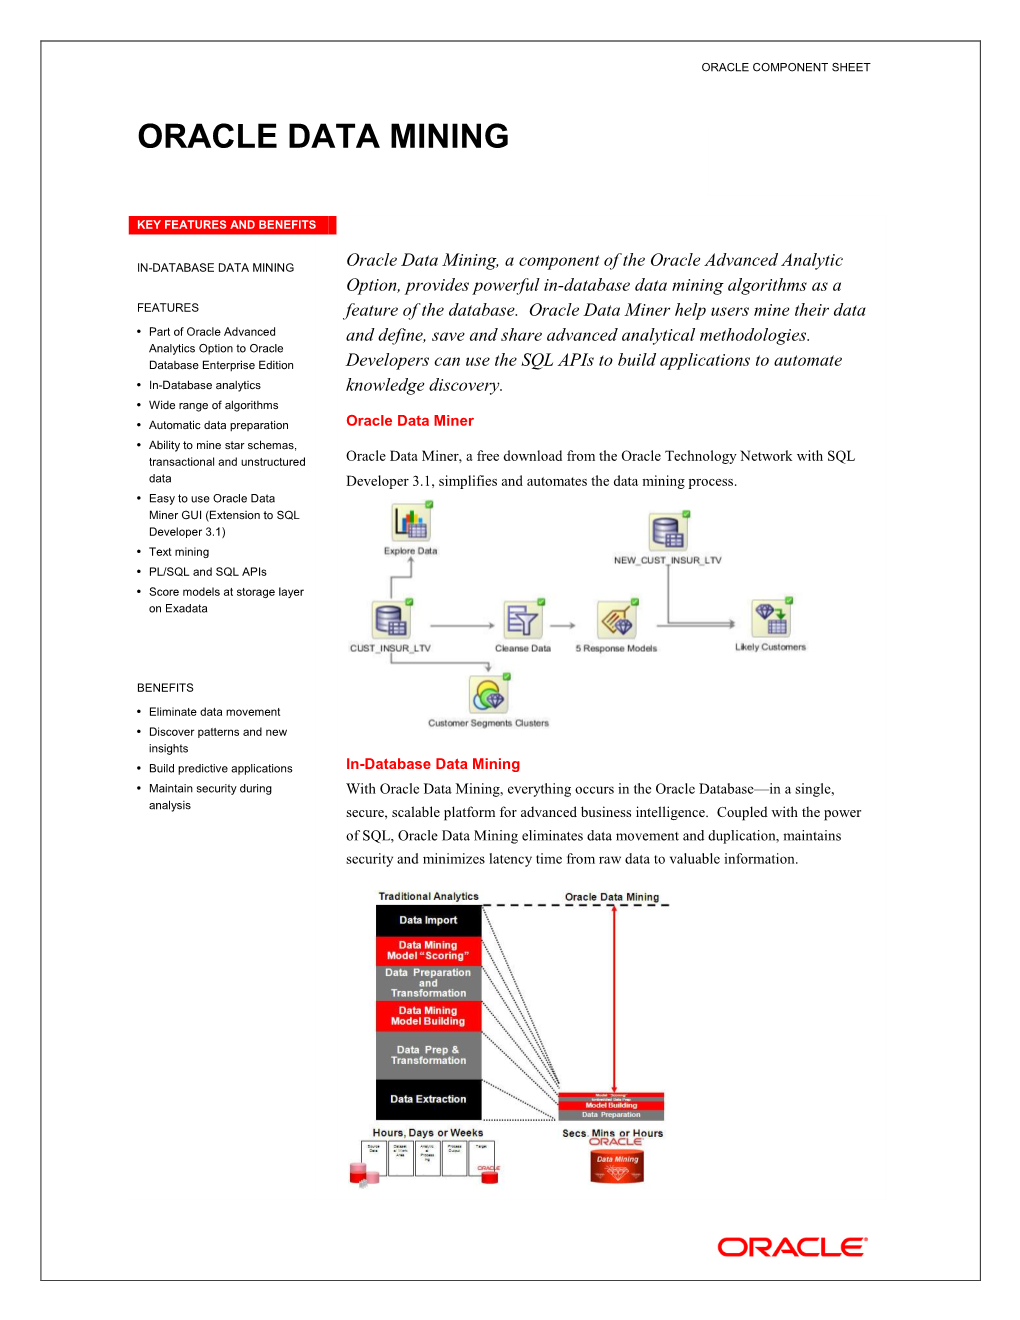 Oracle Data Sheet